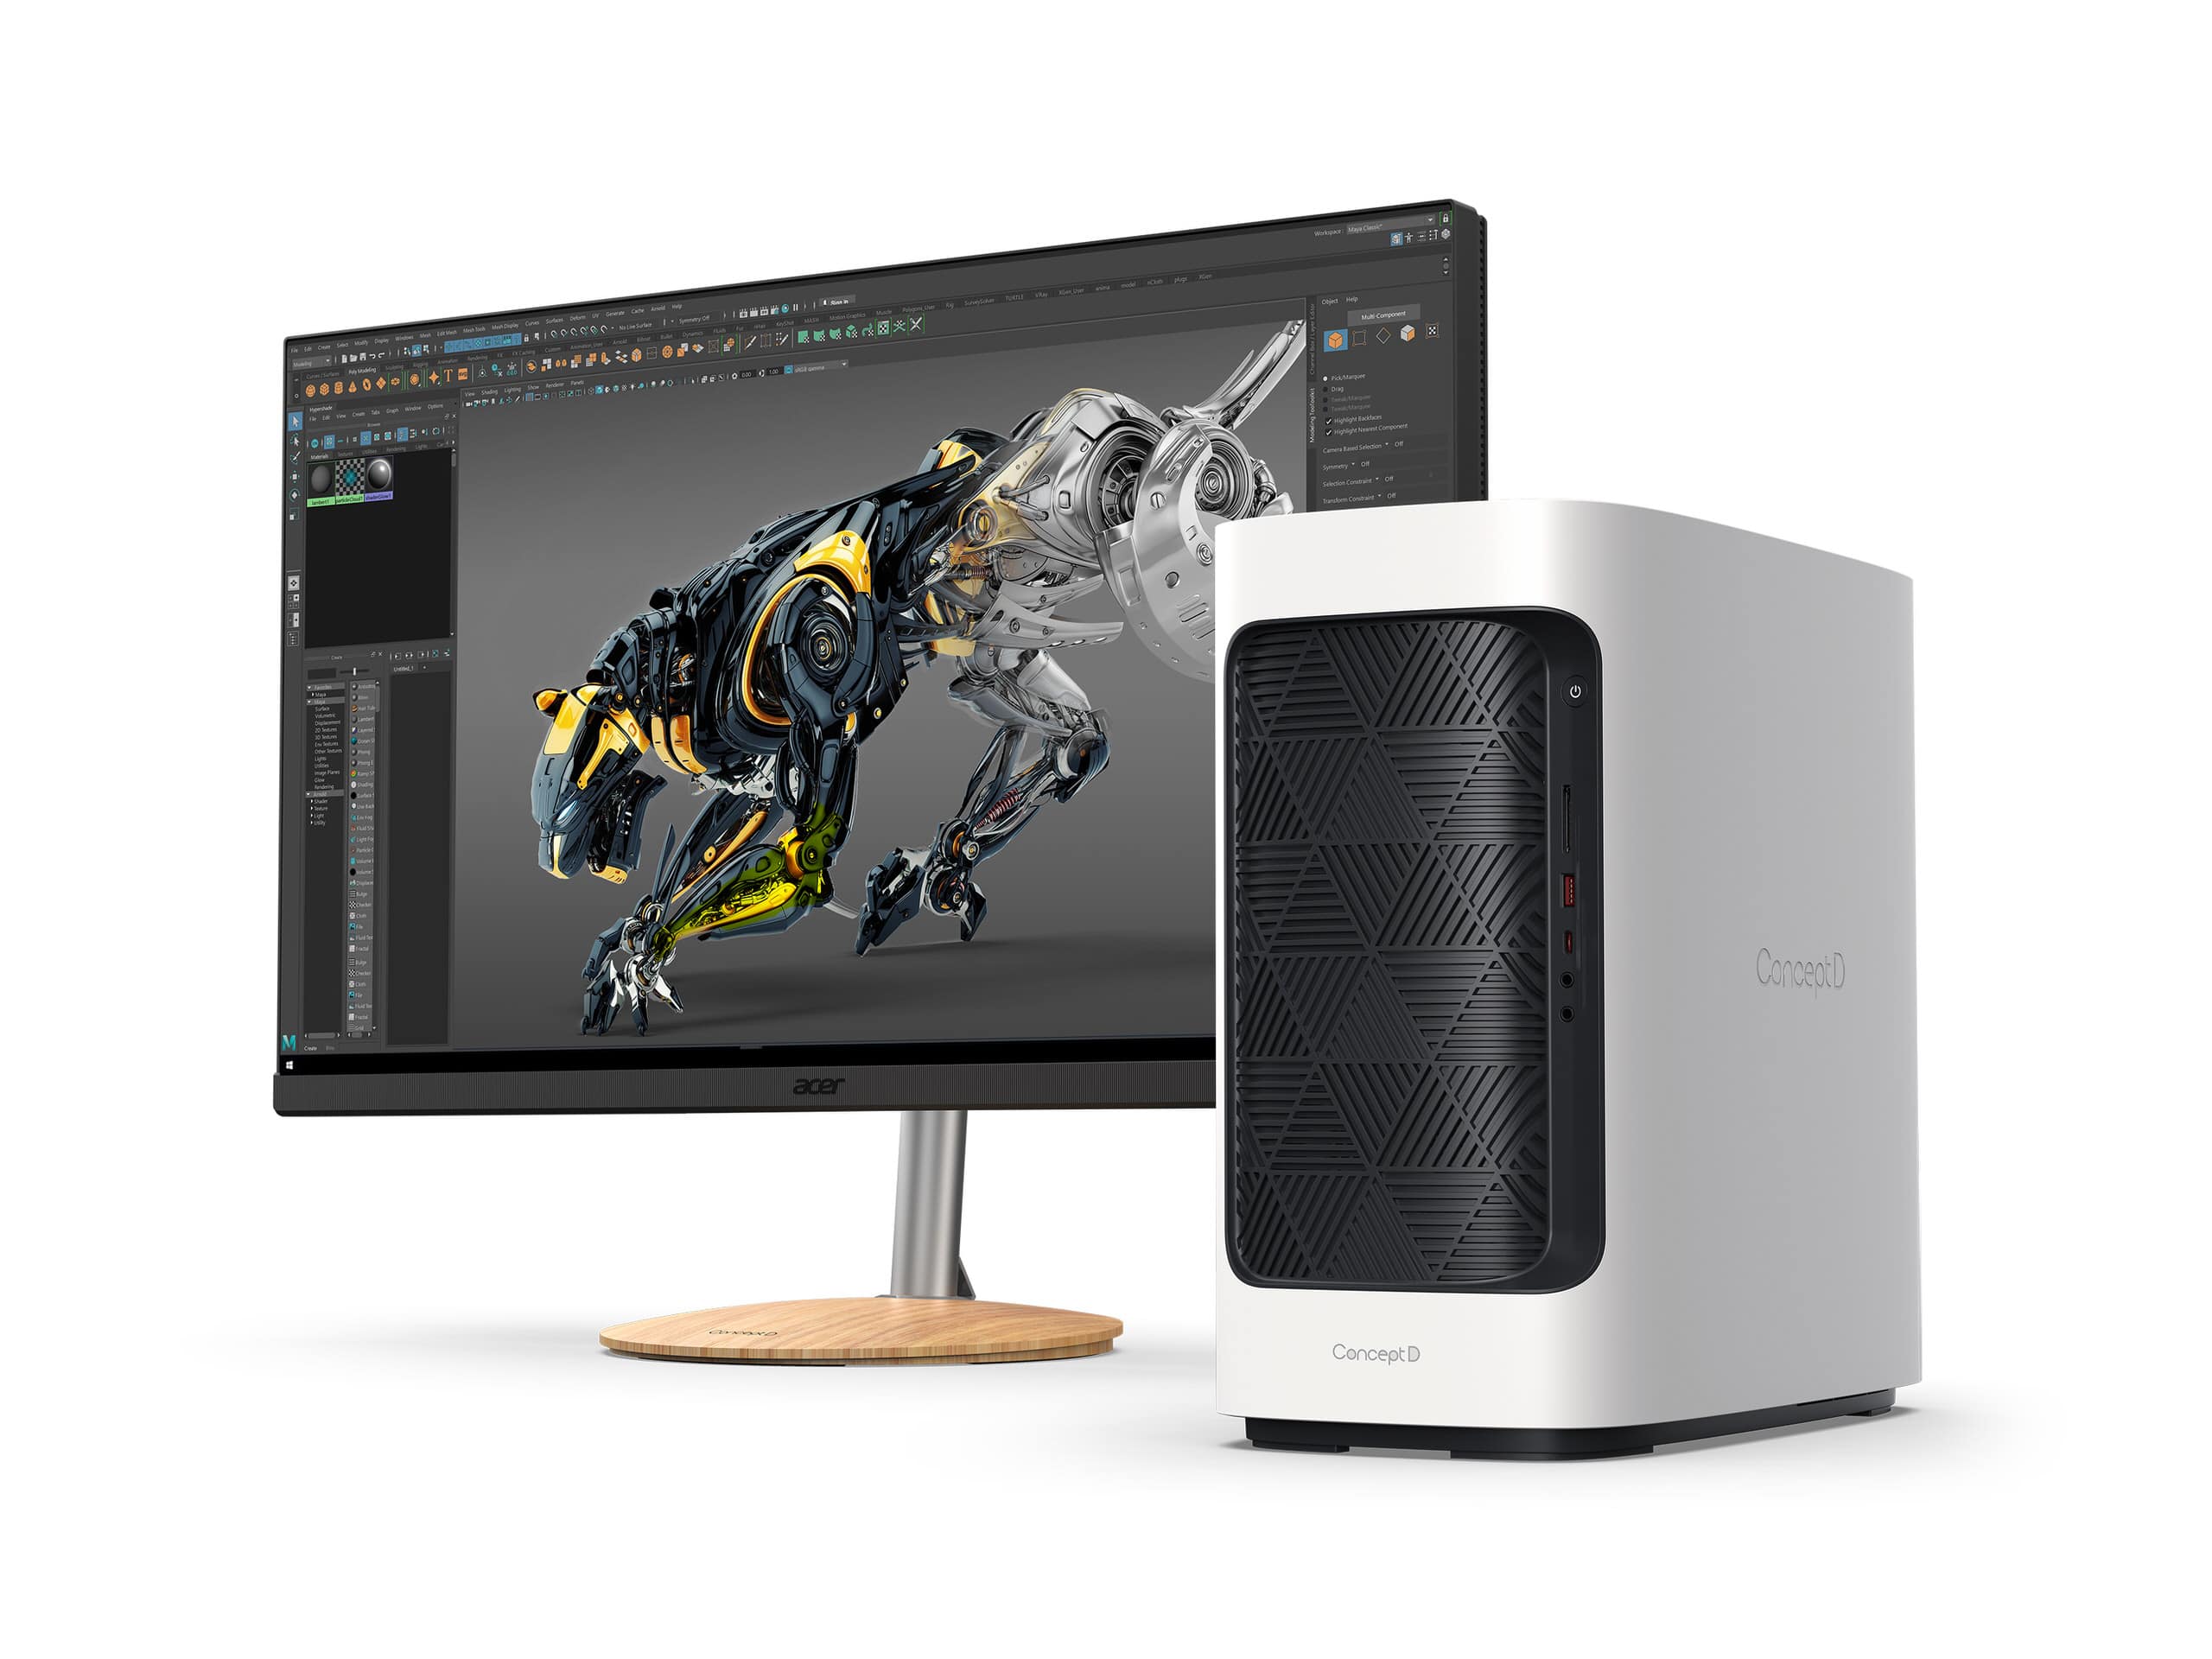 Acer công bố dòng PC ConceptD thế hệ mới dành cho các nhà sáng tạo